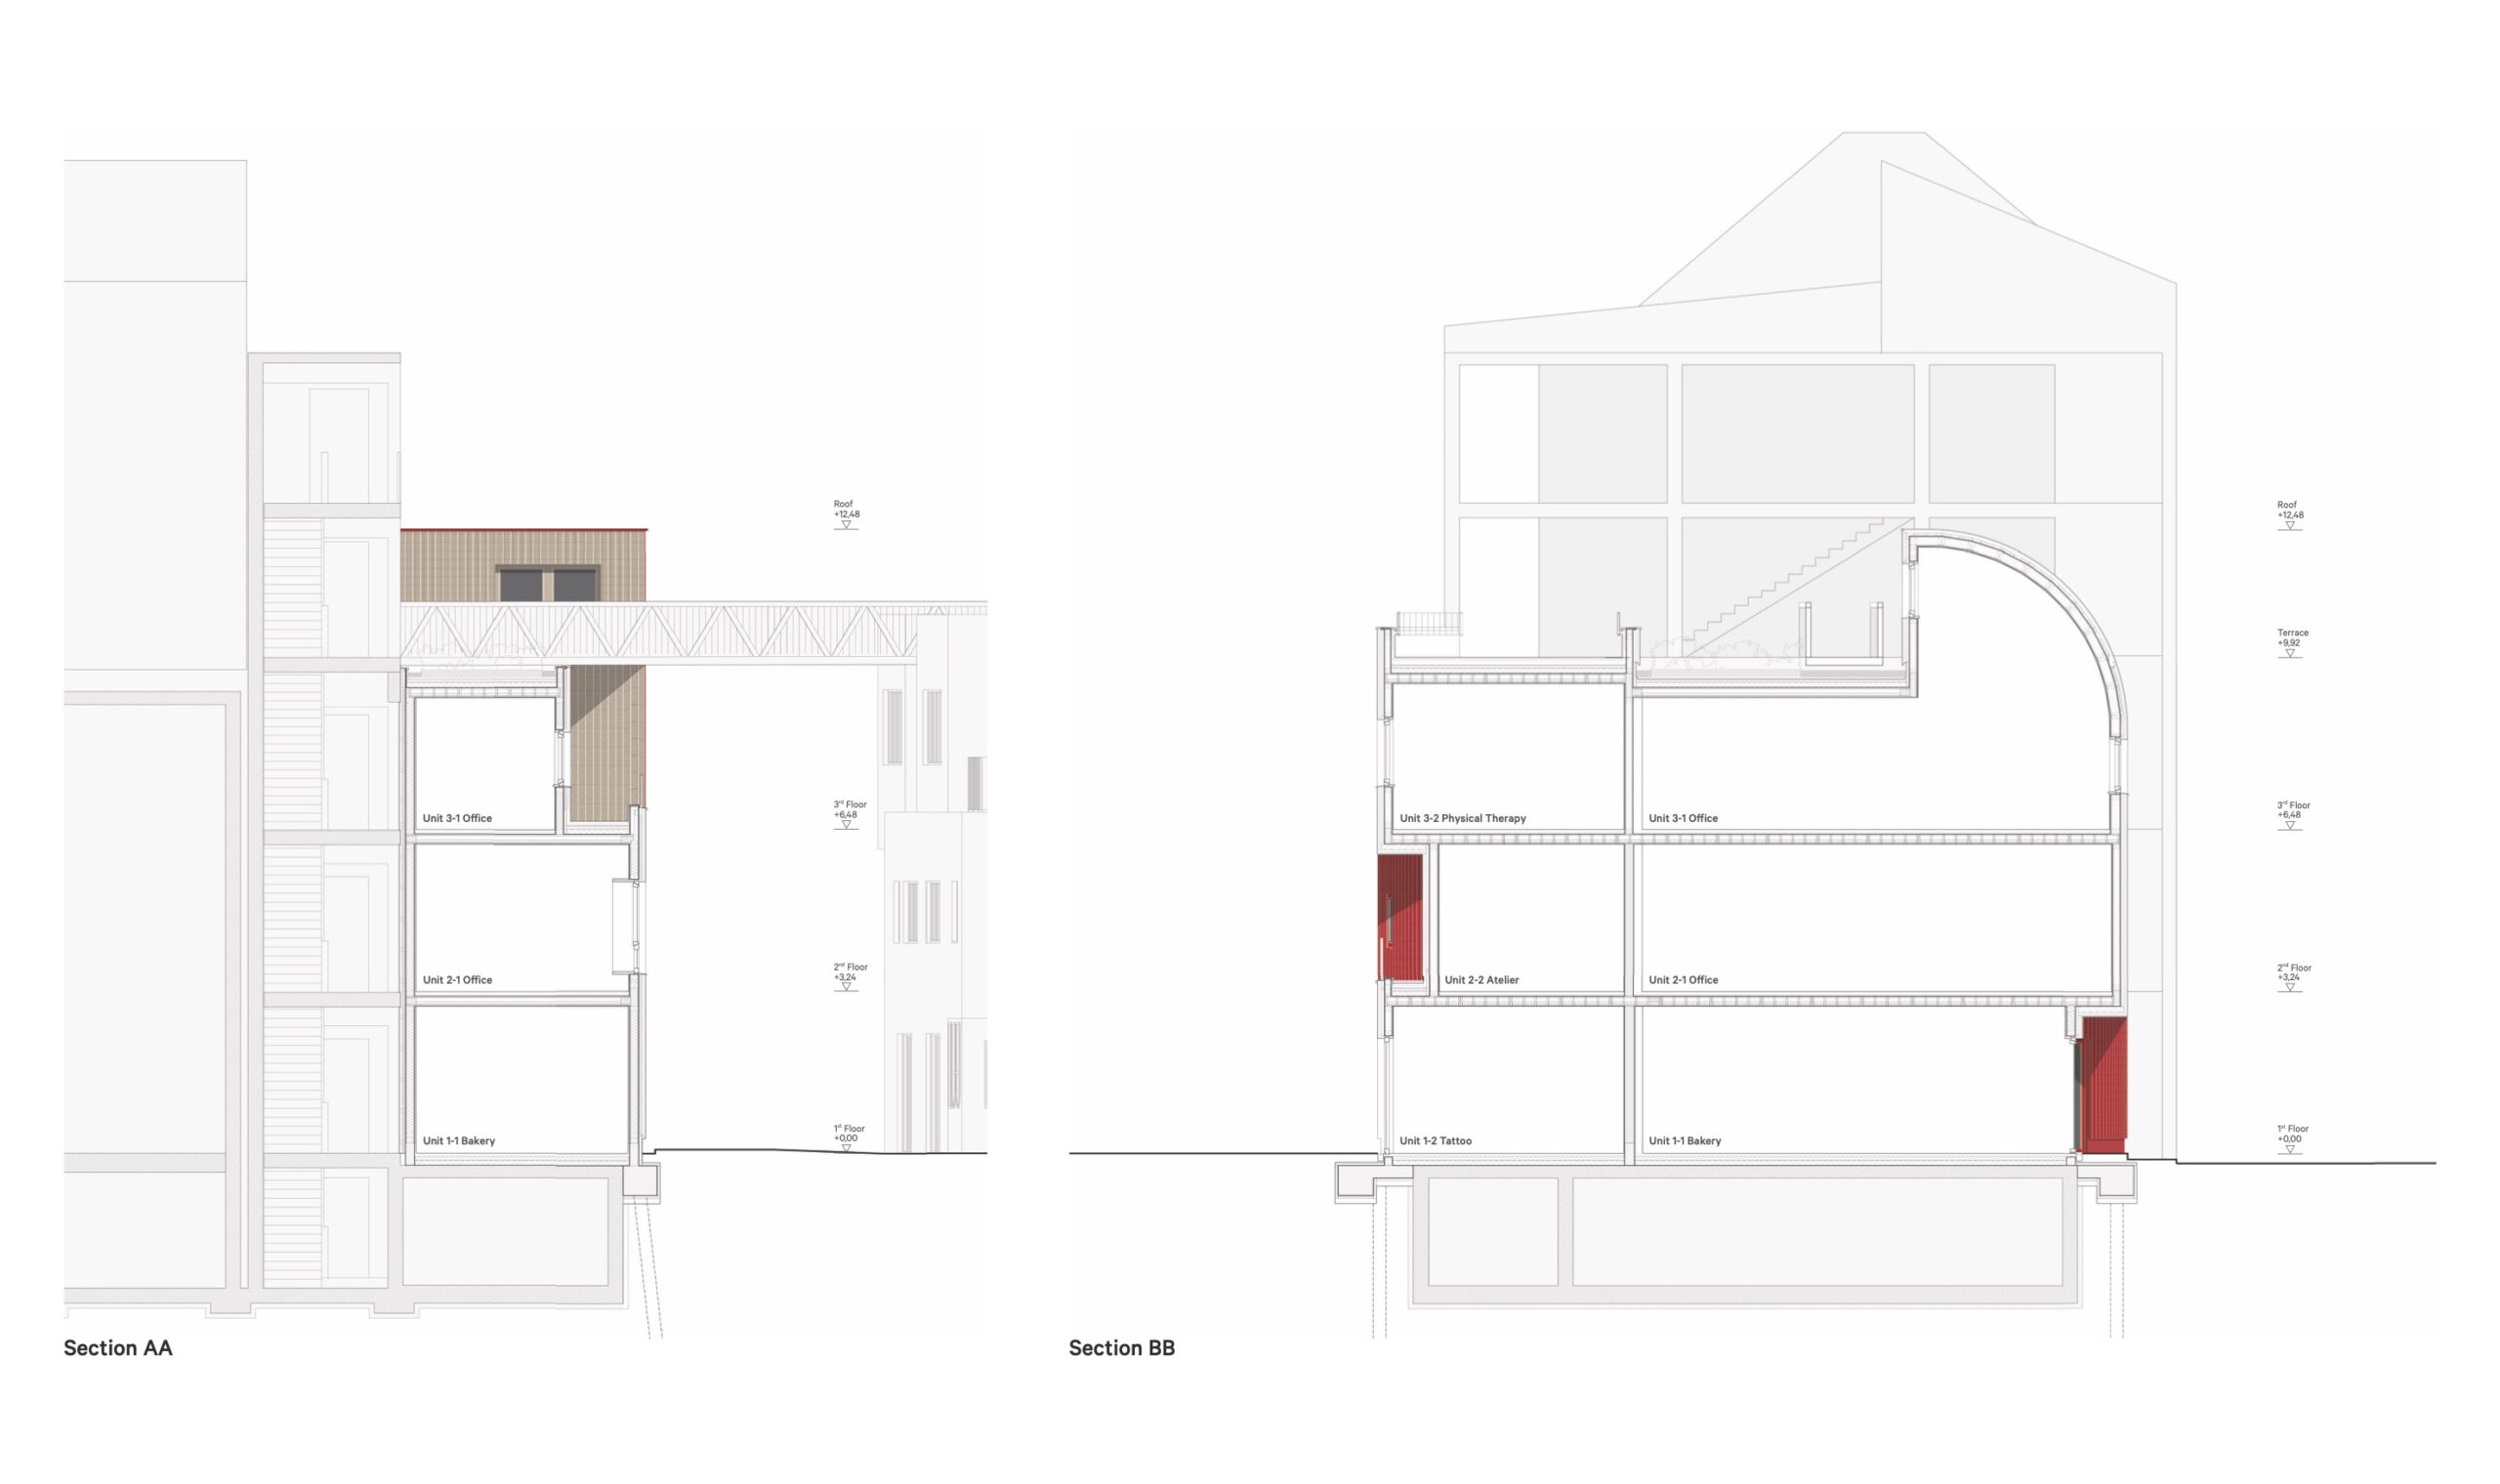 Holzhaus am Holzmarkt: Das Haus 2+ im Längs- und Querschnitt (Zeichnung: Office ParkScheerbarth)